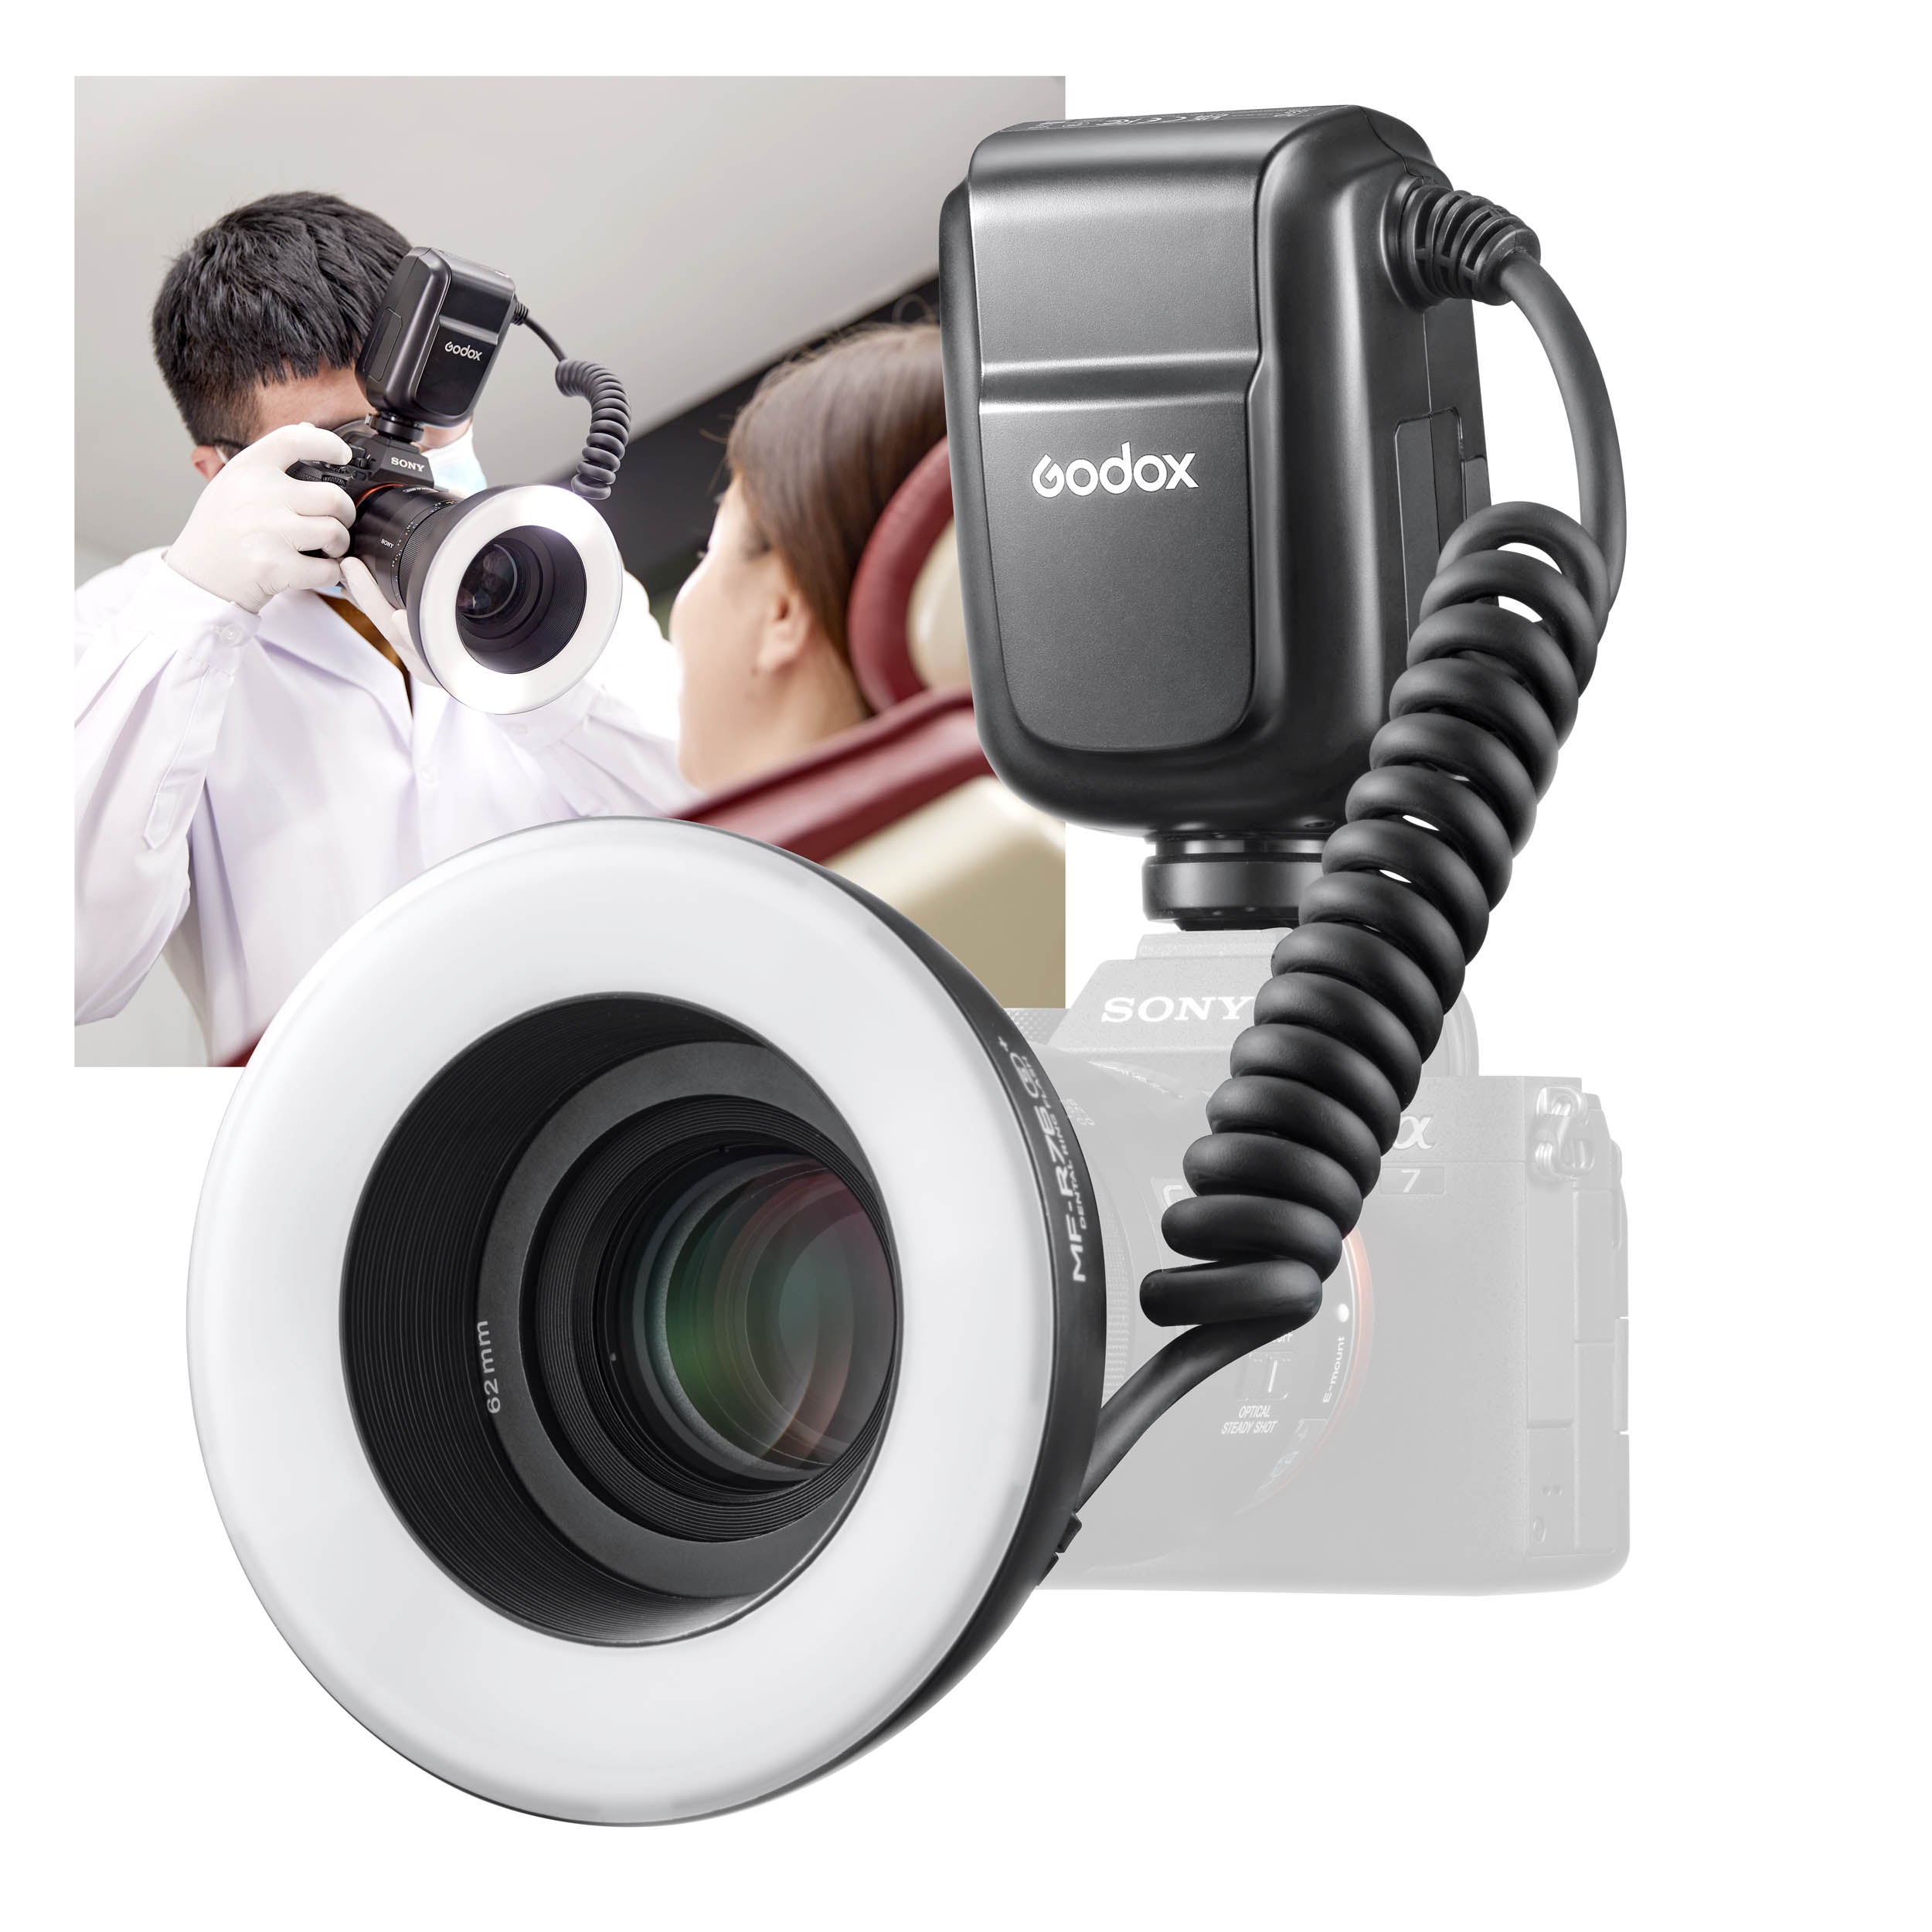 Dentistry Digital Imaging Solutions - Sony Pro